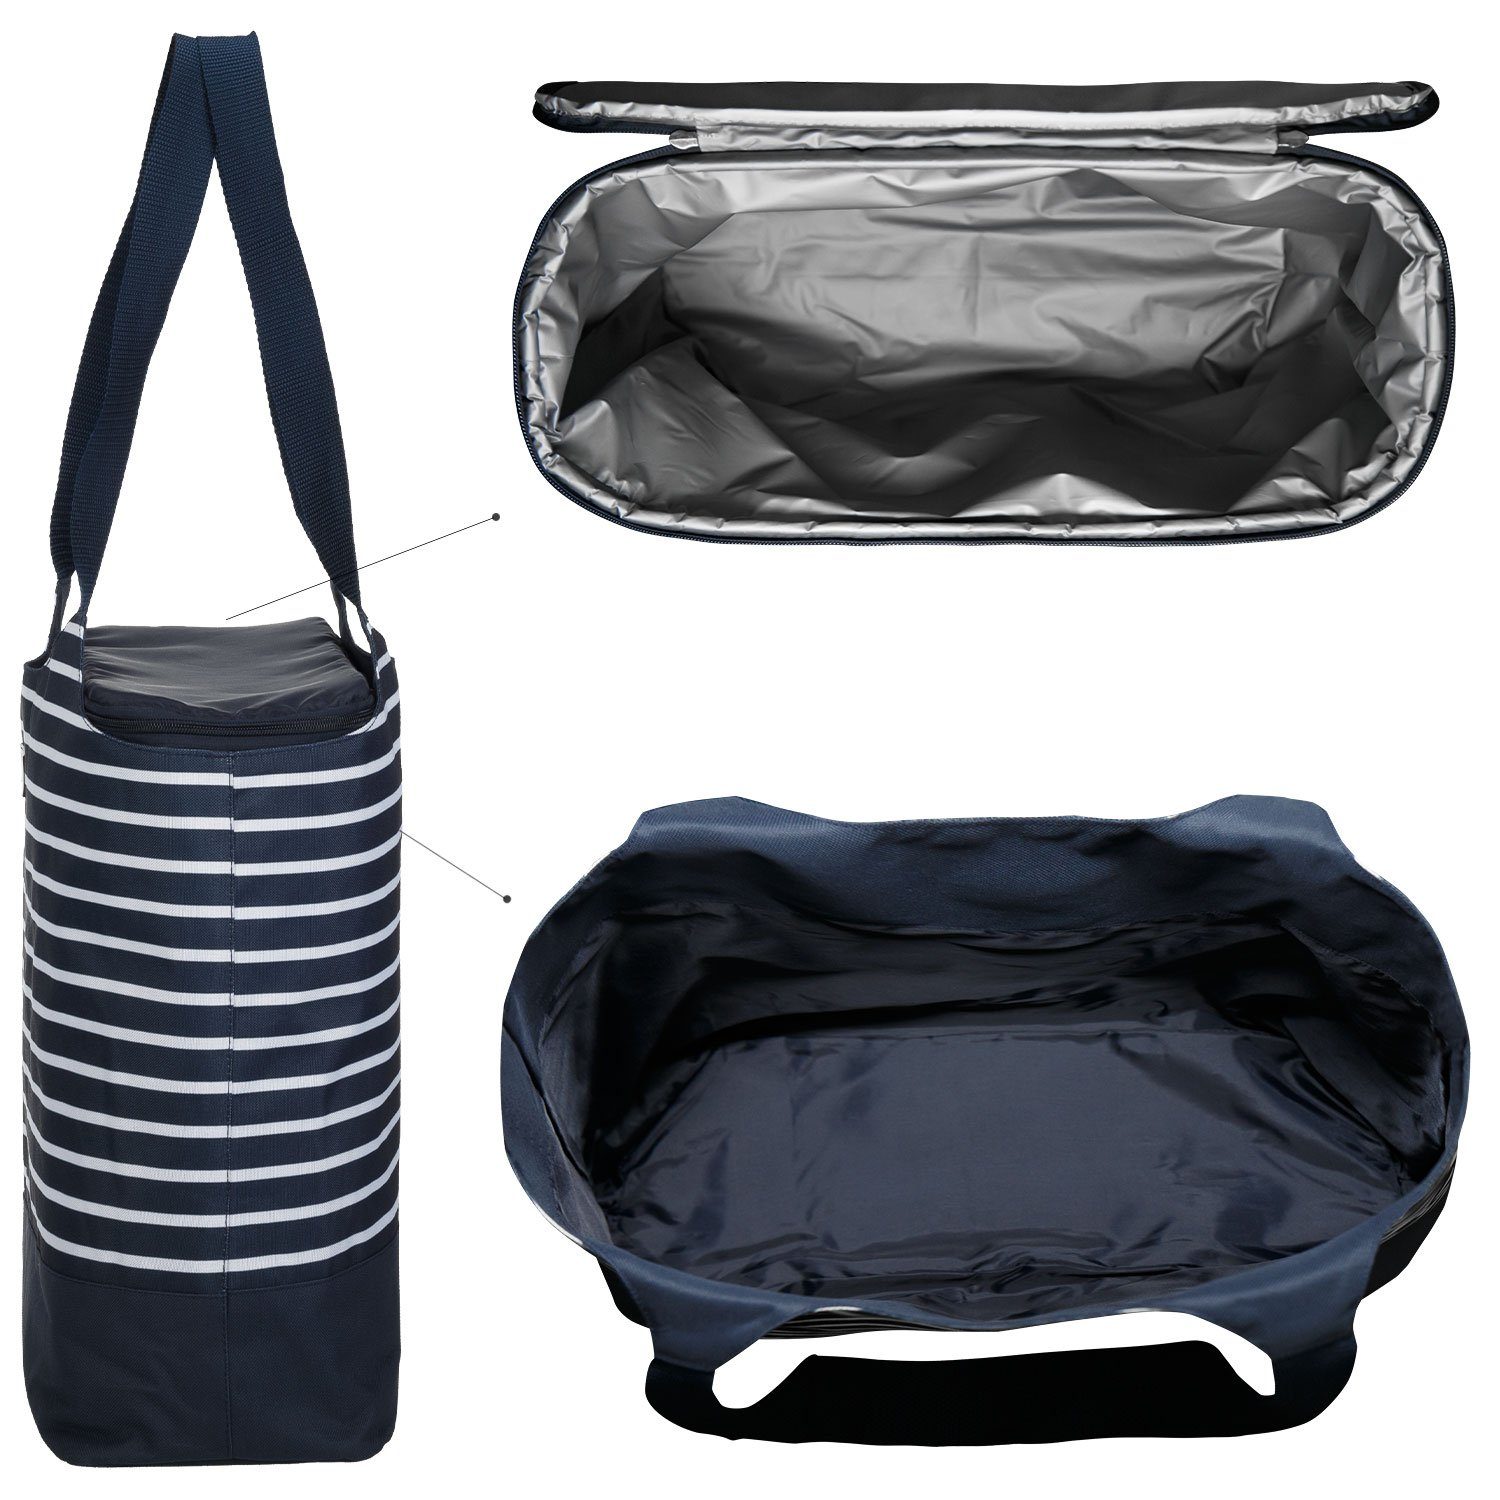 anndora Picknickkorb 2 Kühltasche zur Einkaufstasche Auswahl + 1 - + Blau Kühlakku Design in